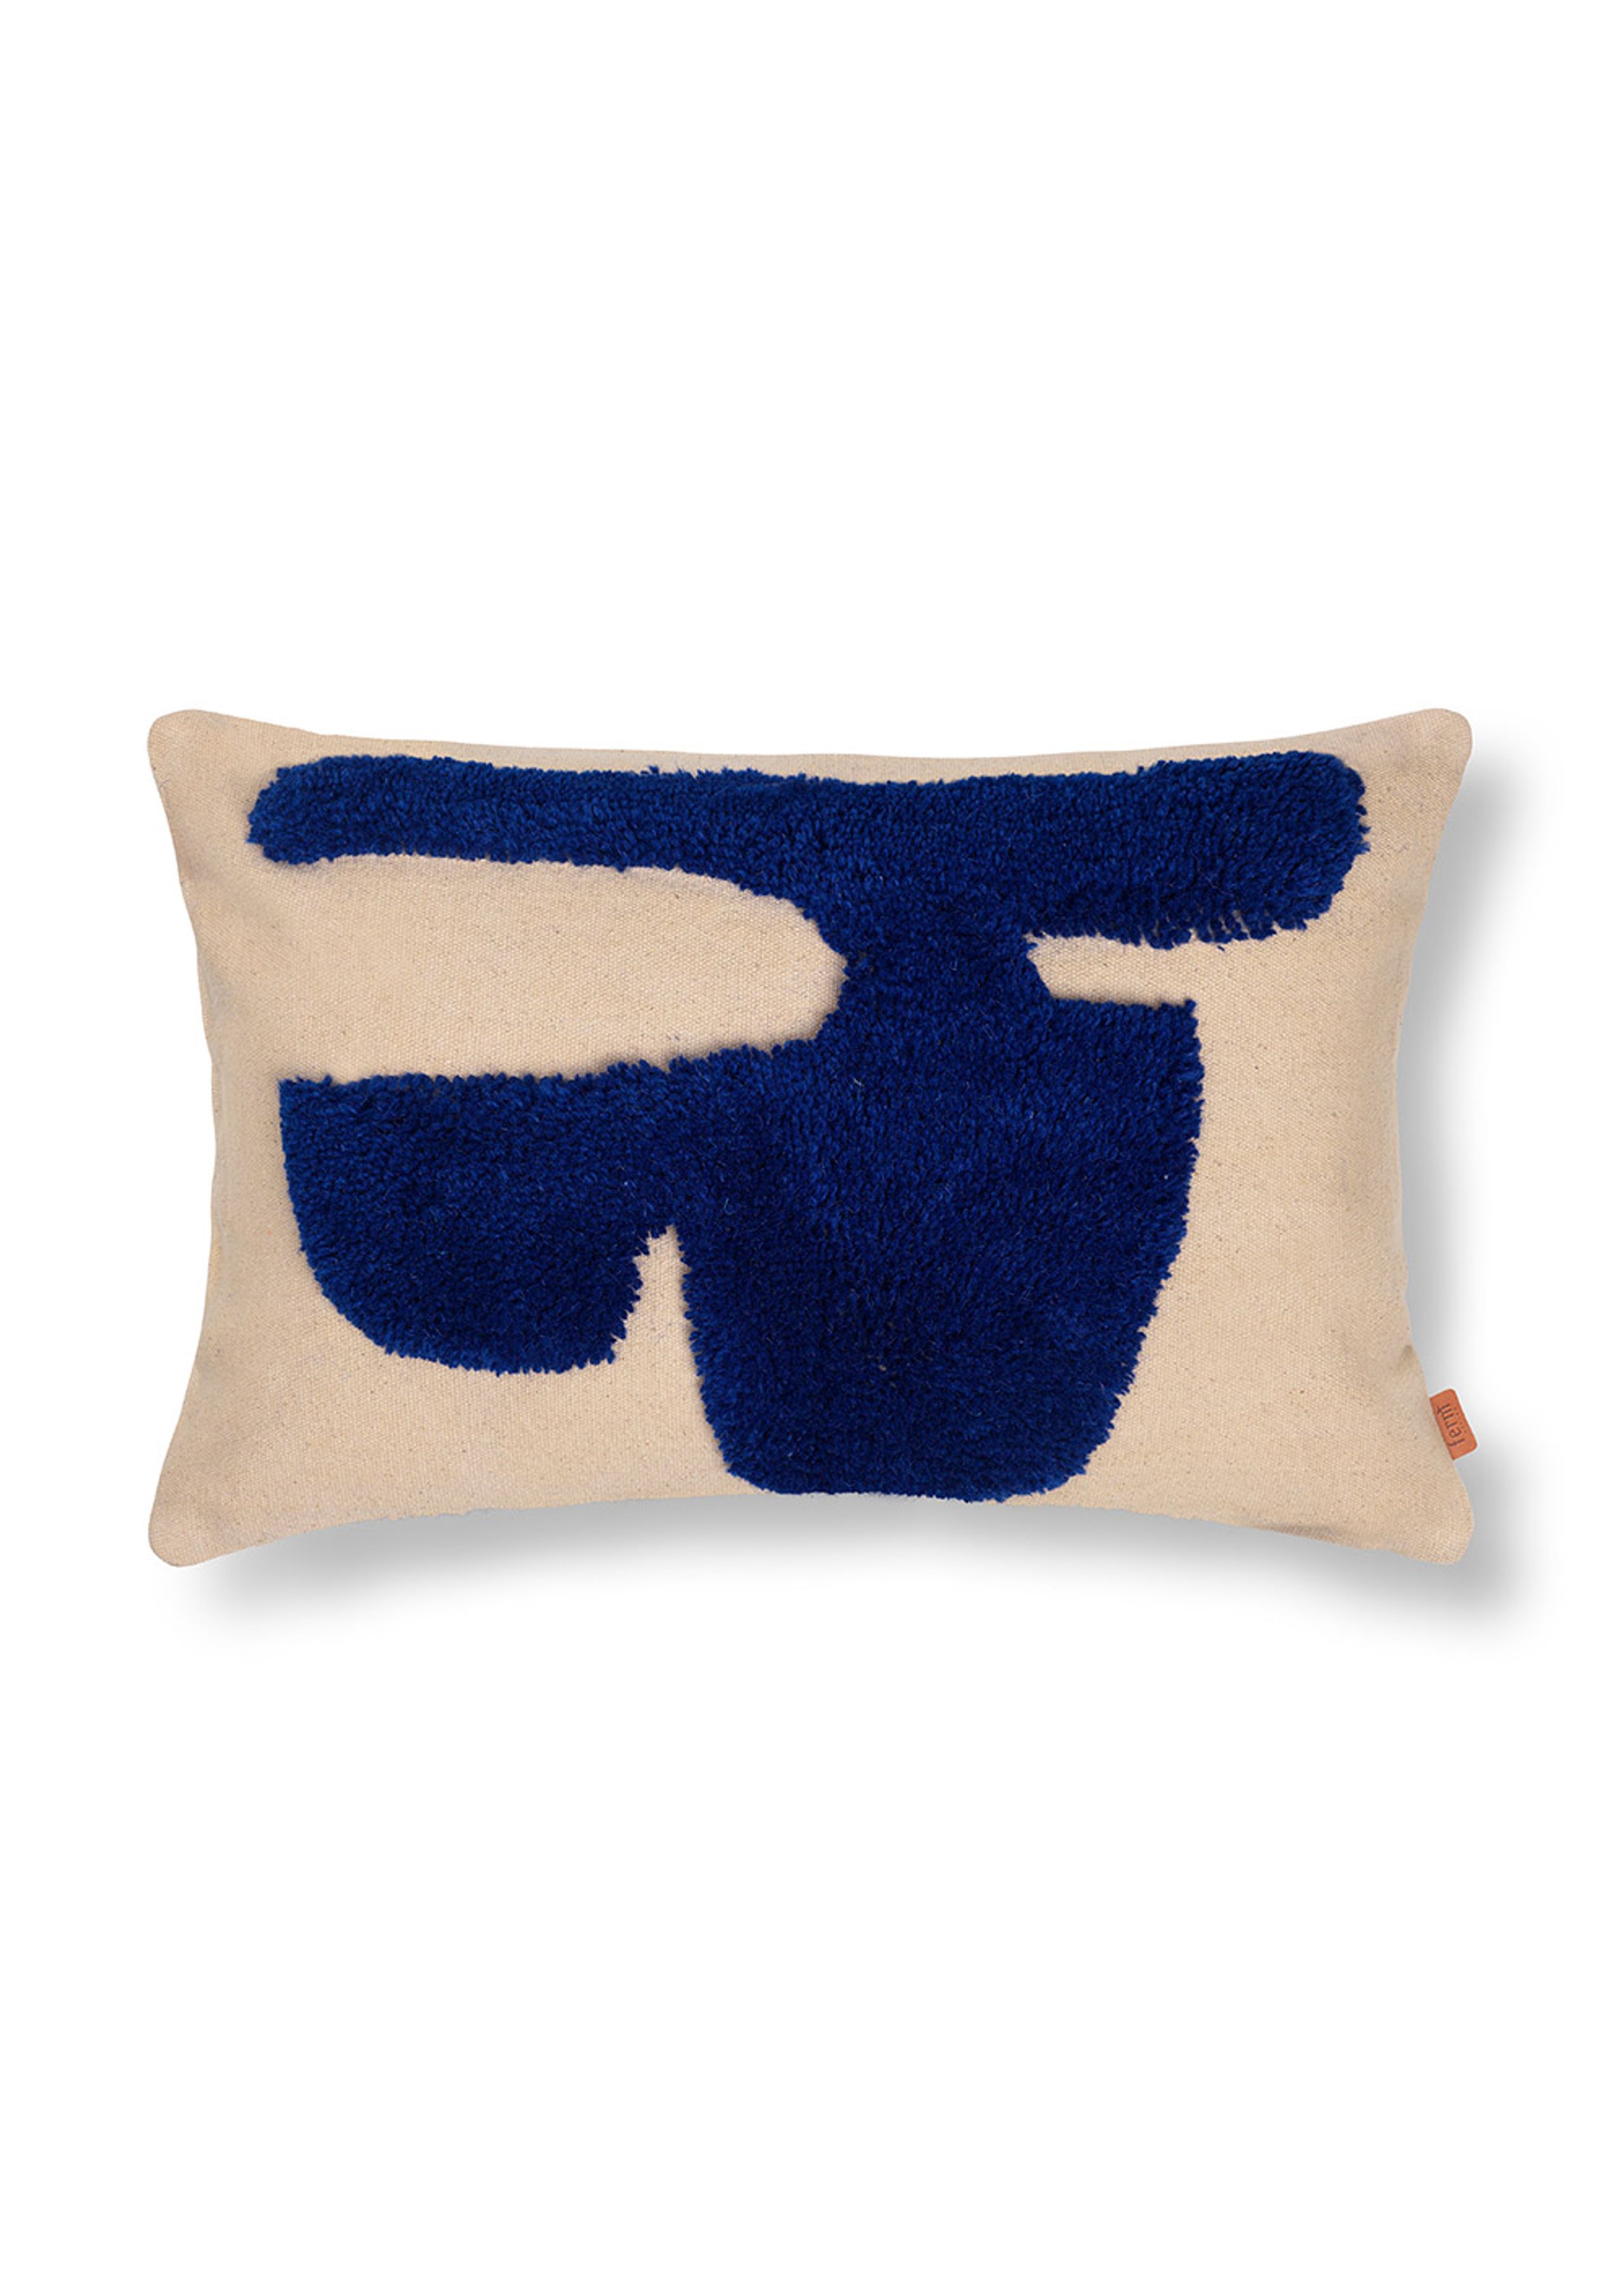 Ferm Living - Pillow - Lay Cushion - Sand / Bright Blue